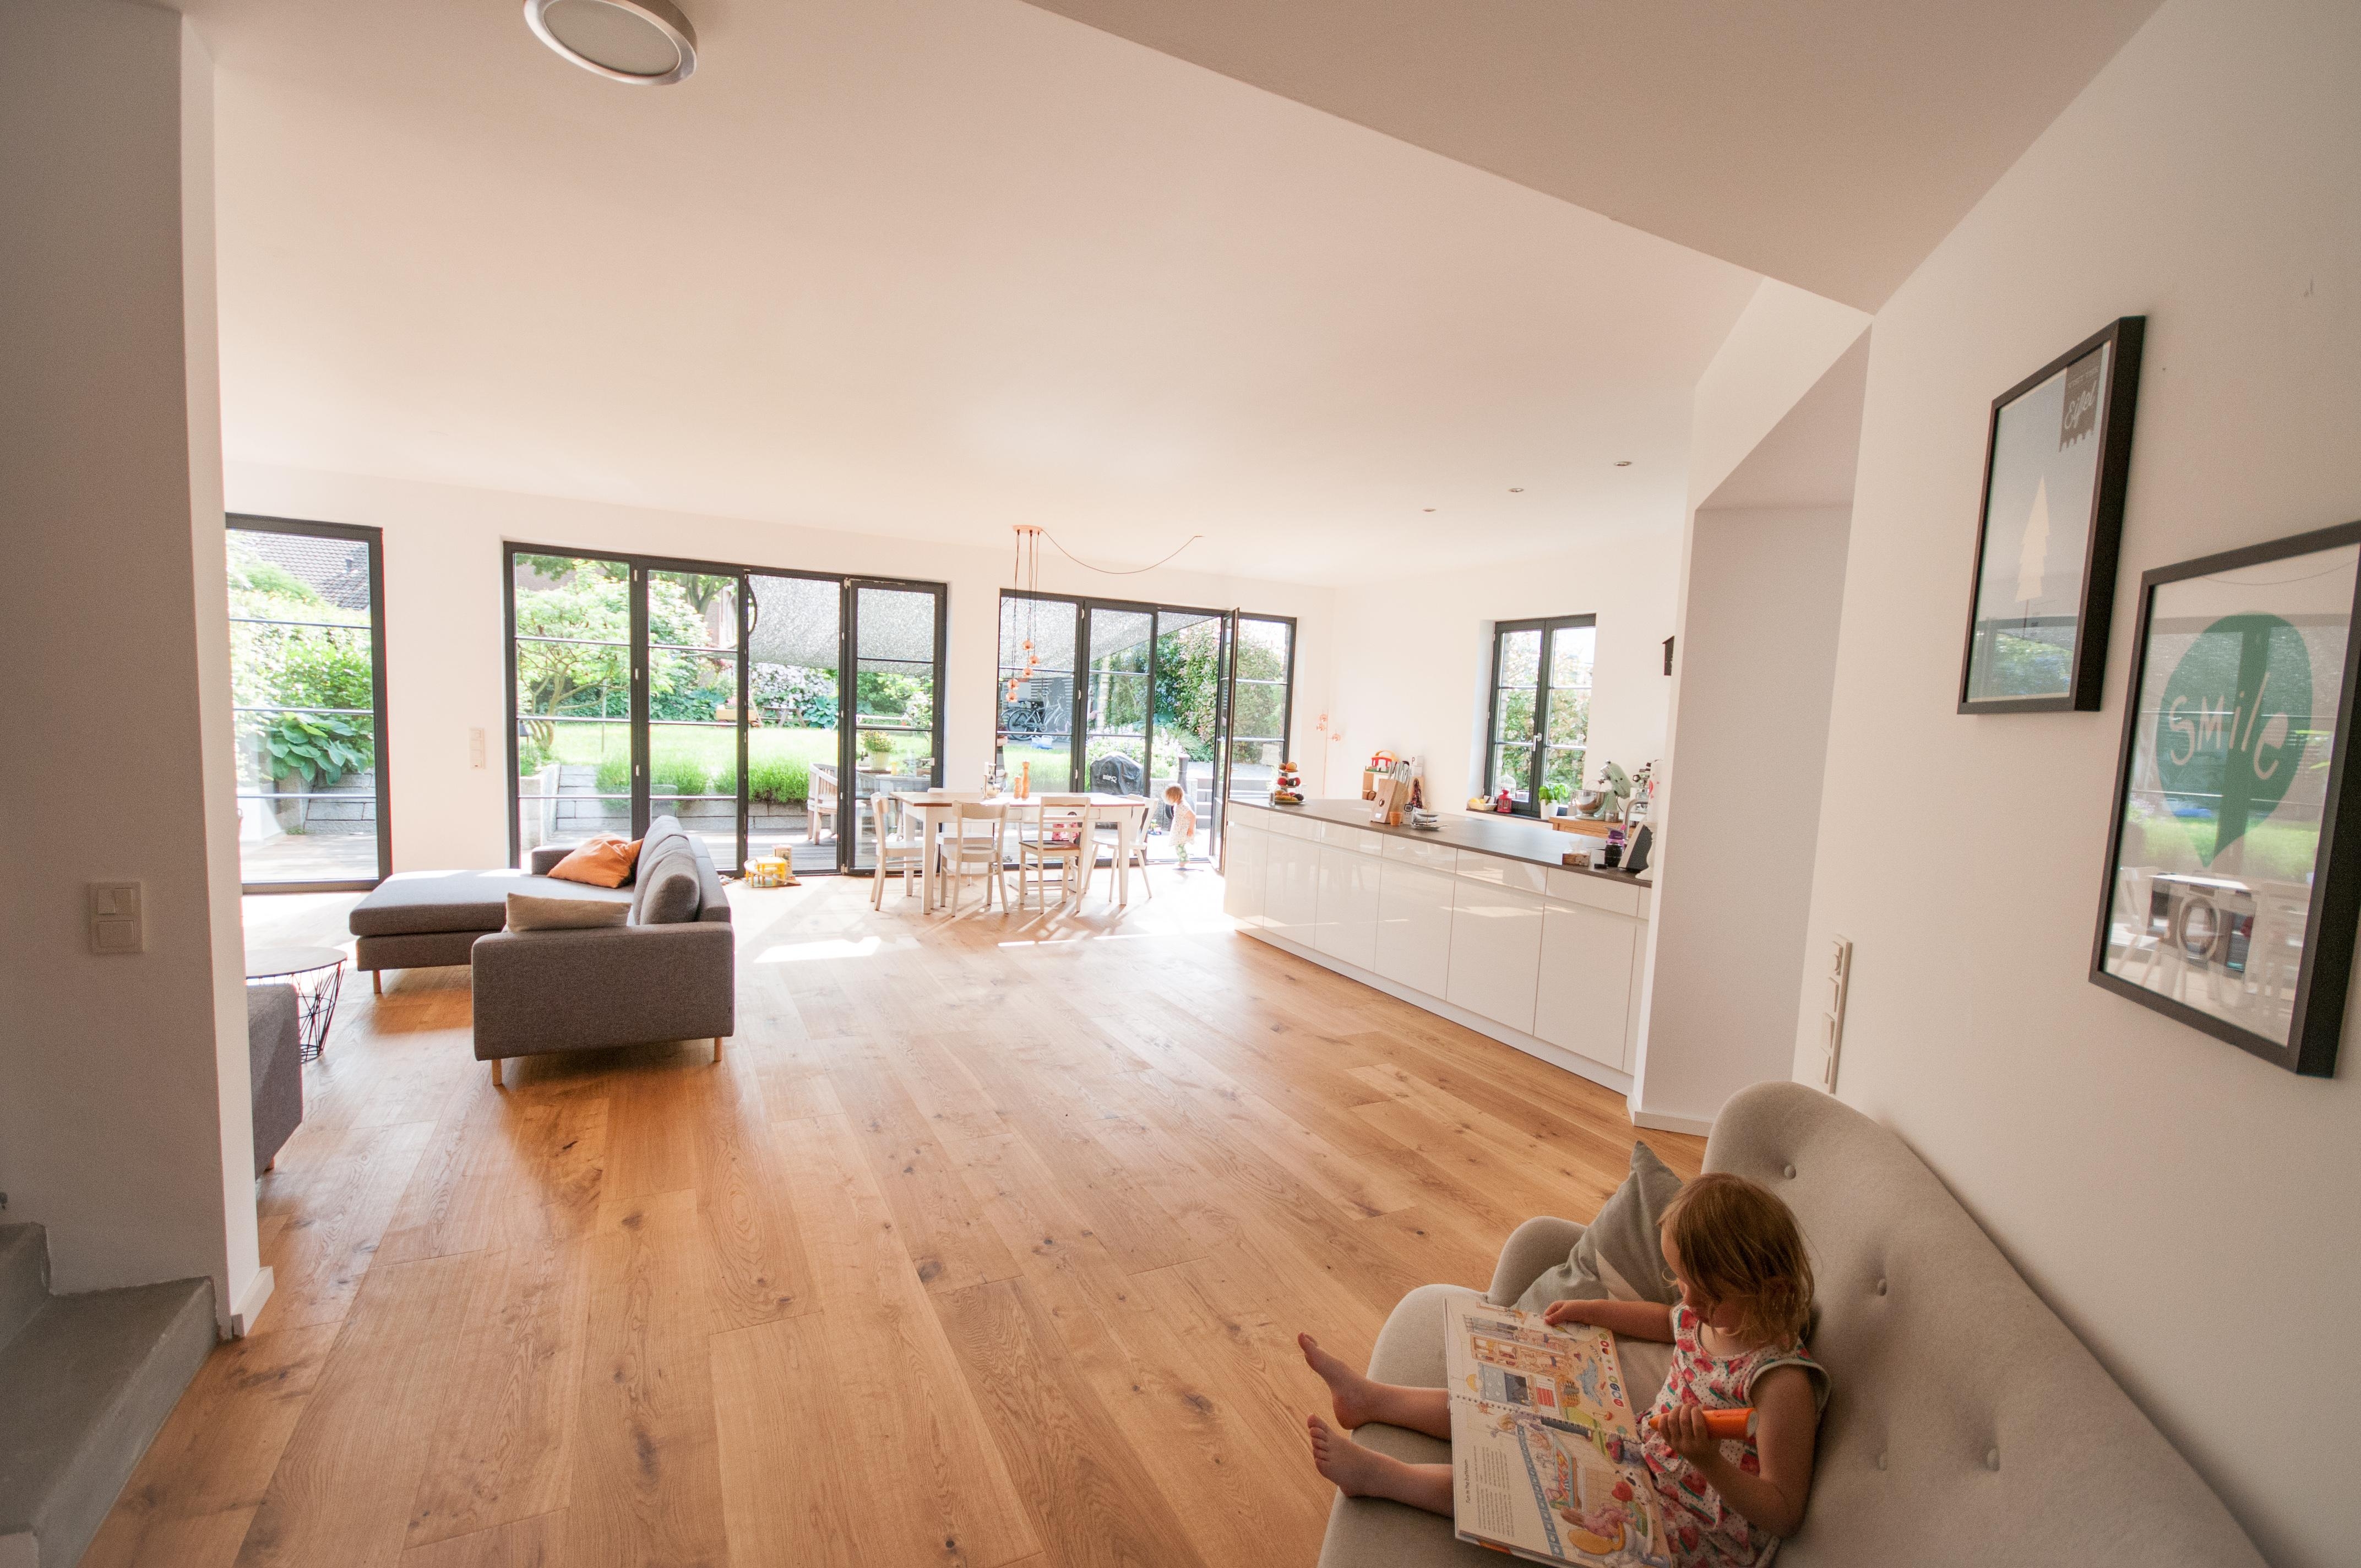 Platz gibt es im Wohnbereich genug #minimalism #scandiliving #livingroom #home